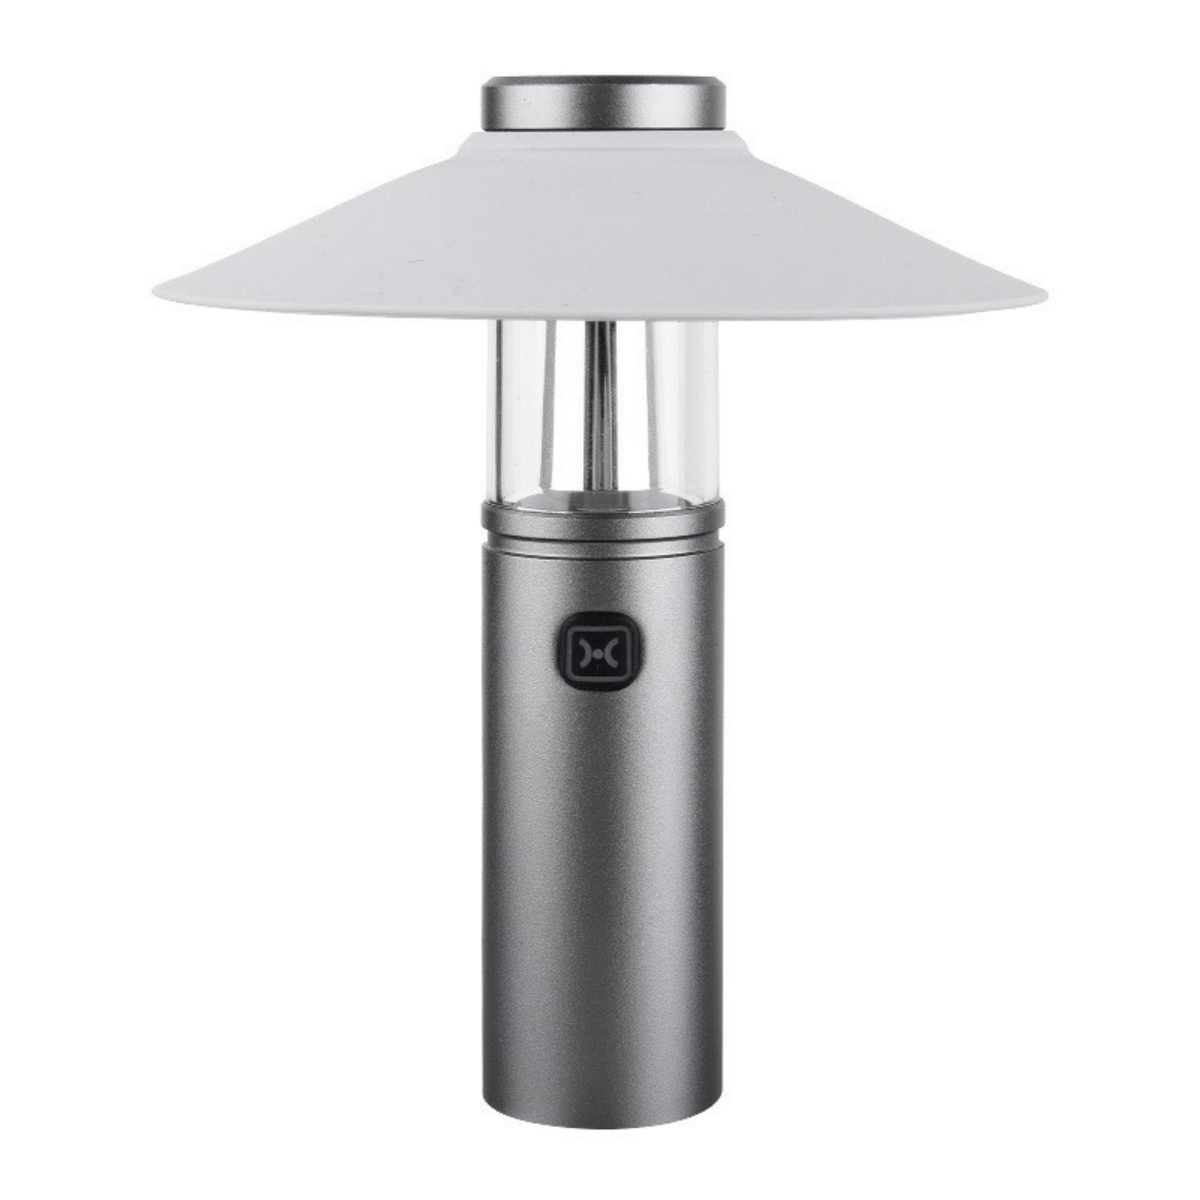 مصباح يدوي صغير قابل للمحمول للتخييم في الهواء الطلق في المنزل انقطاع طاقة الطوارئ USB قابلة للشحن مغناطي